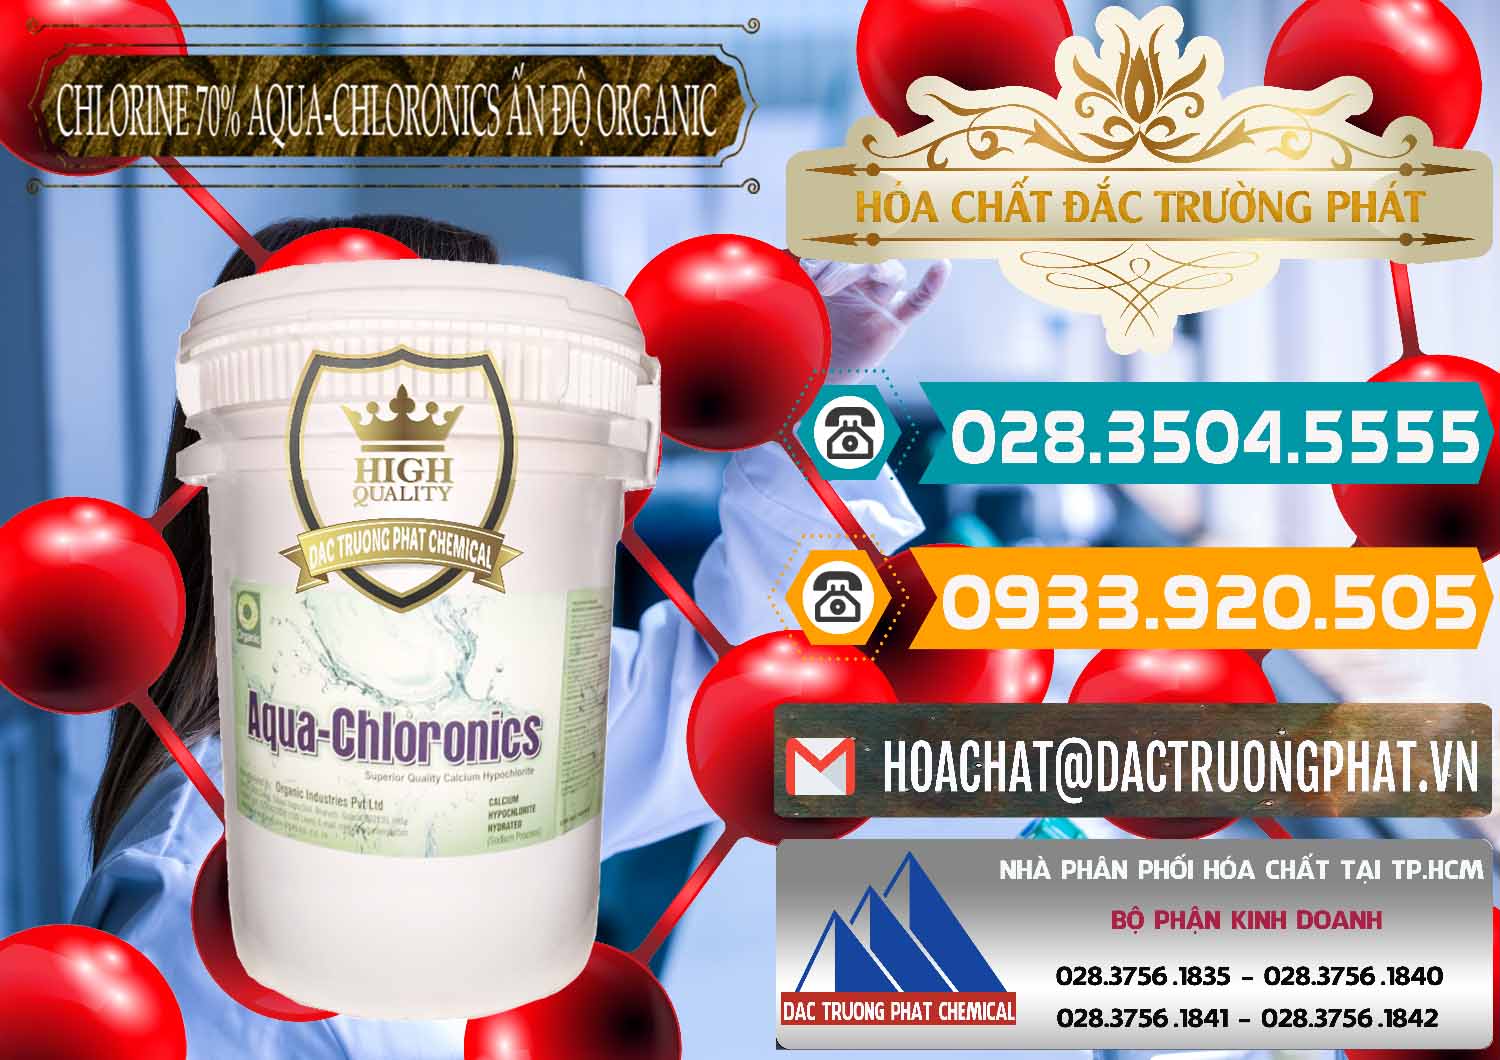 Đơn vị chuyên kinh doanh - bán Chlorine – Clorin 70% Aqua-Chloronics Ấn Độ Organic India - 0211 - Cung cấp ( phân phối ) hóa chất tại TP.HCM - congtyhoachat.vn